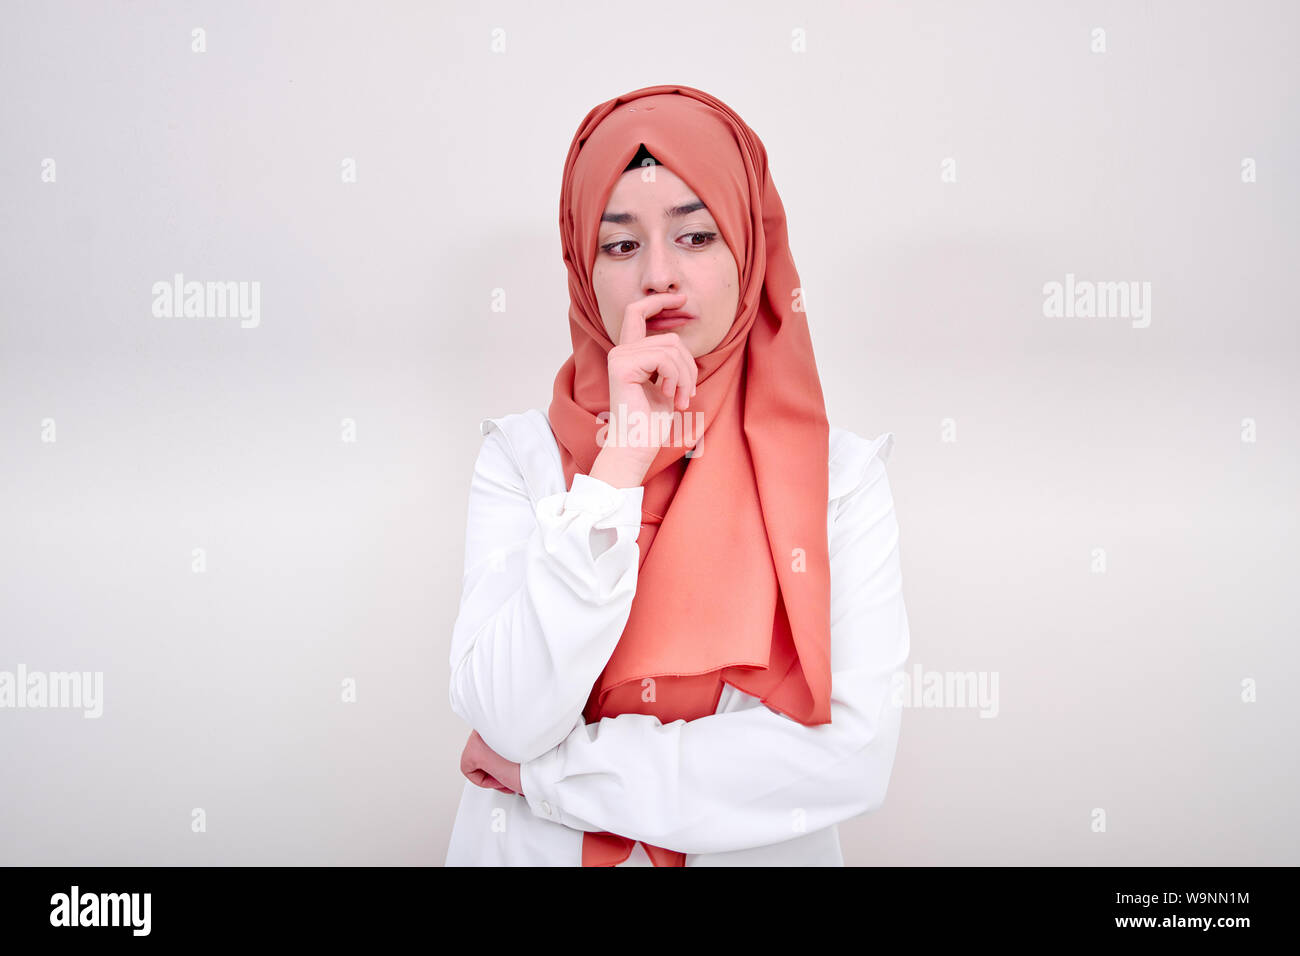 La pensée musulmane, elle est porter un foulard et elle est isolée sur fond blanc Banque D'Images